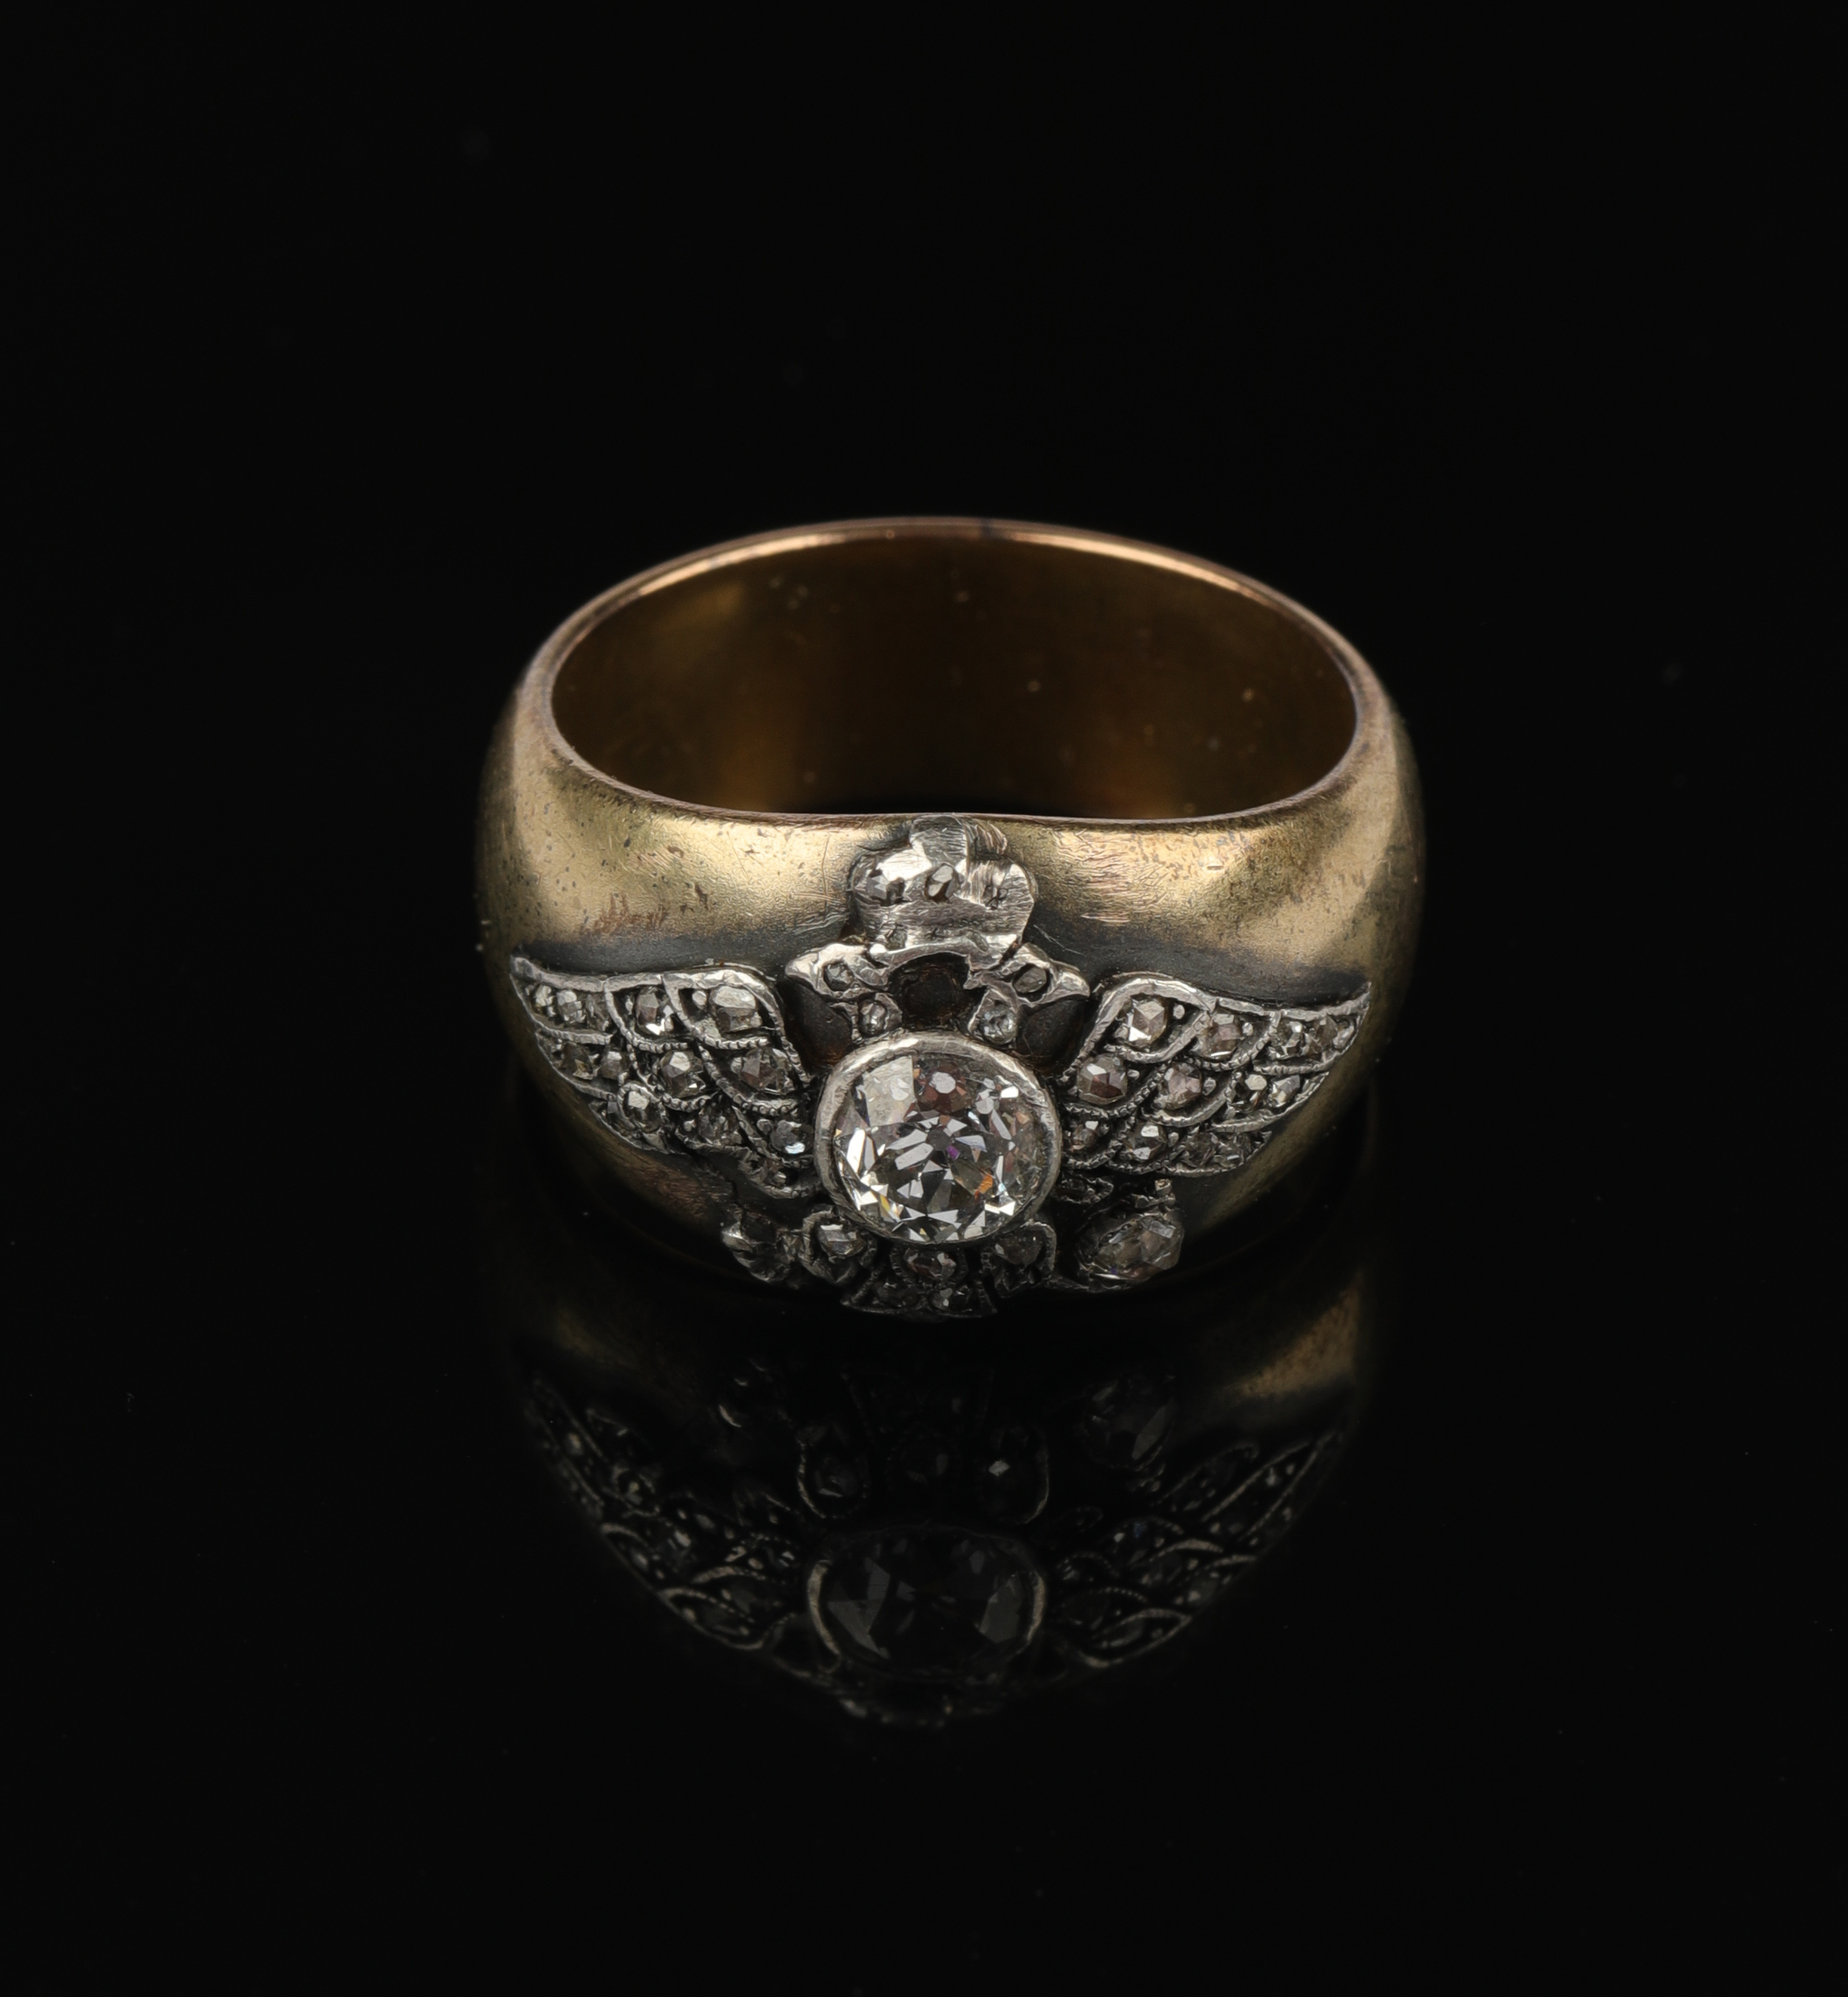 Лот №202 — Подарочный перстень от Кабинета Его Императорского Величества. СанктПетербург, 1908–1917 годы. Мастер Карл Бланк